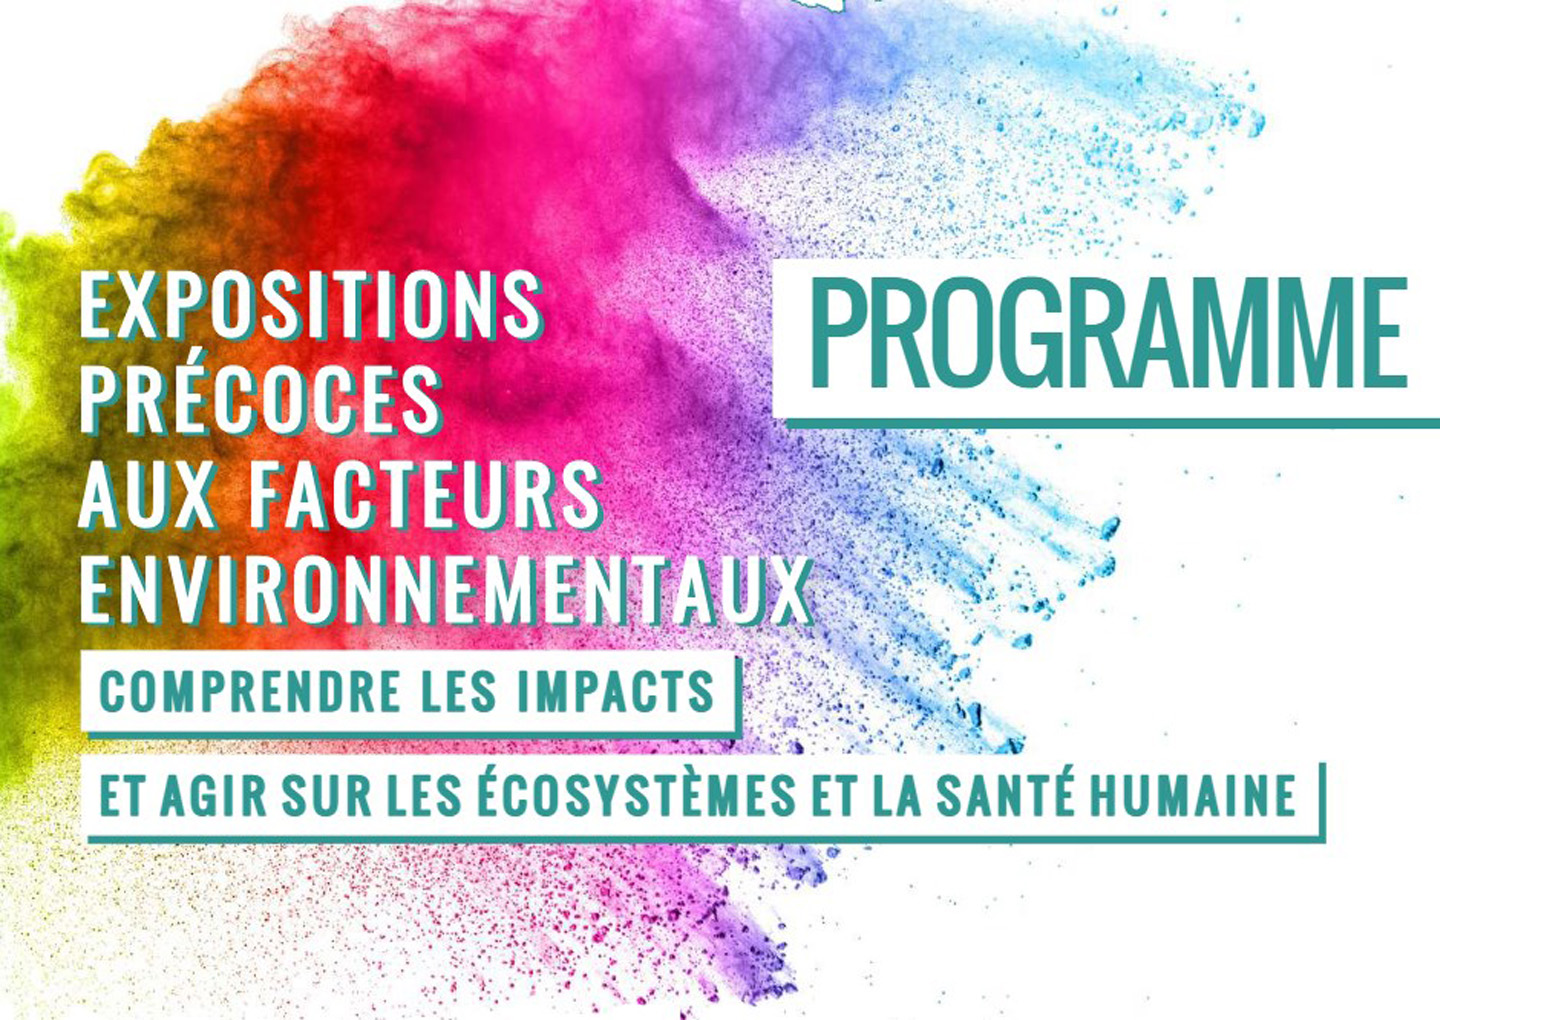 CONGRÈS SFSE 2022 : Expositions précoces aux facteurs environnementaux – Du 23/11/2022 au 25/11/2022 à Valence